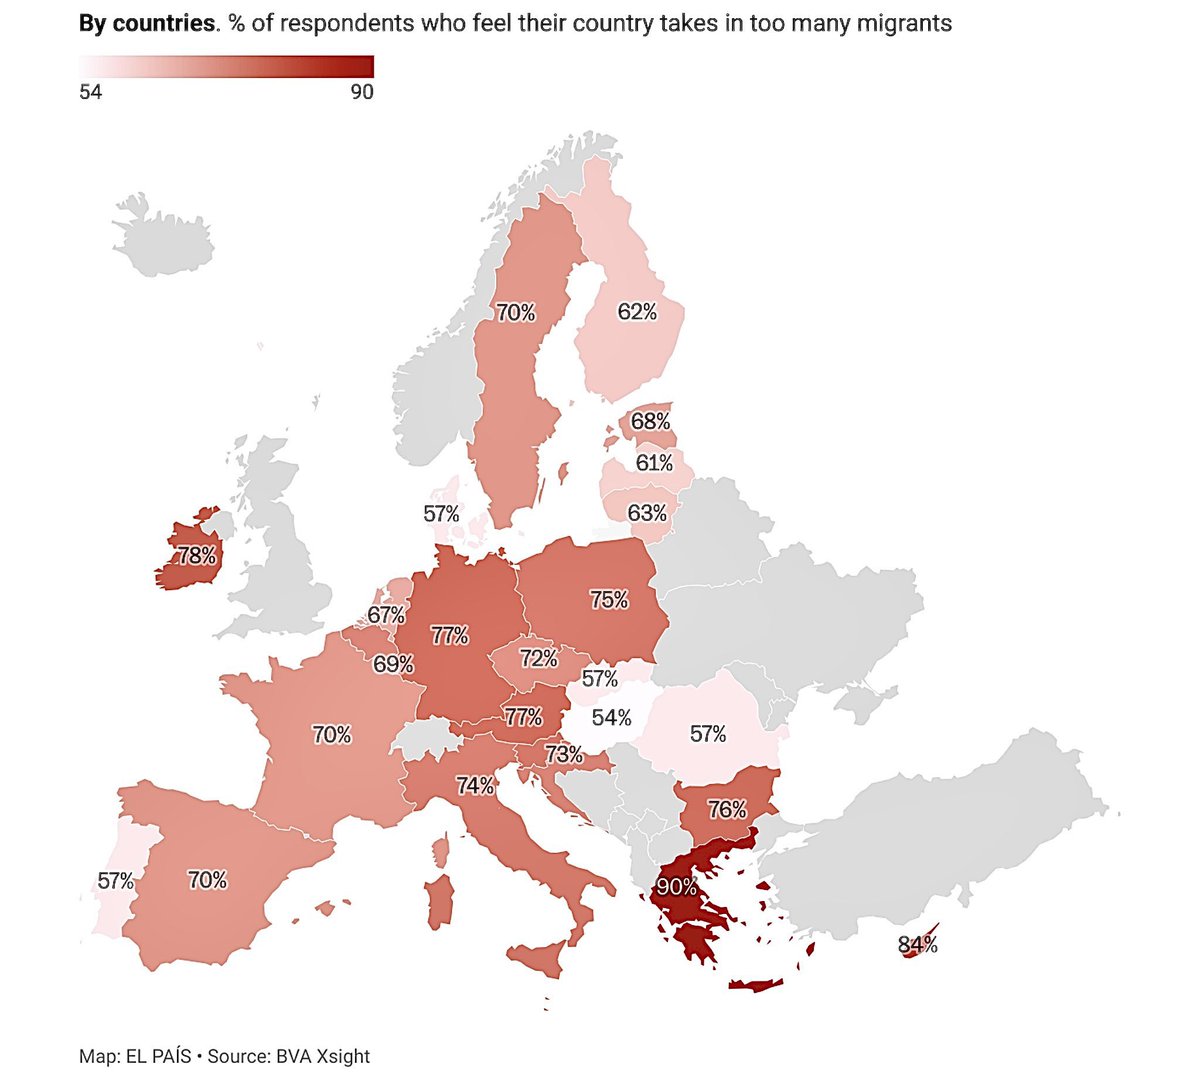 7 av 10 européer anser att invandringen är för hög.

Bara 4 av 10 anser att Europa behöver invandring.

Så varför ökar den? Svaret är enkelt: väljarna röstar på partier som inte vill minska den. Om du röstar på partier som ökar invandringen så minskar den inte. Rösta rätt.